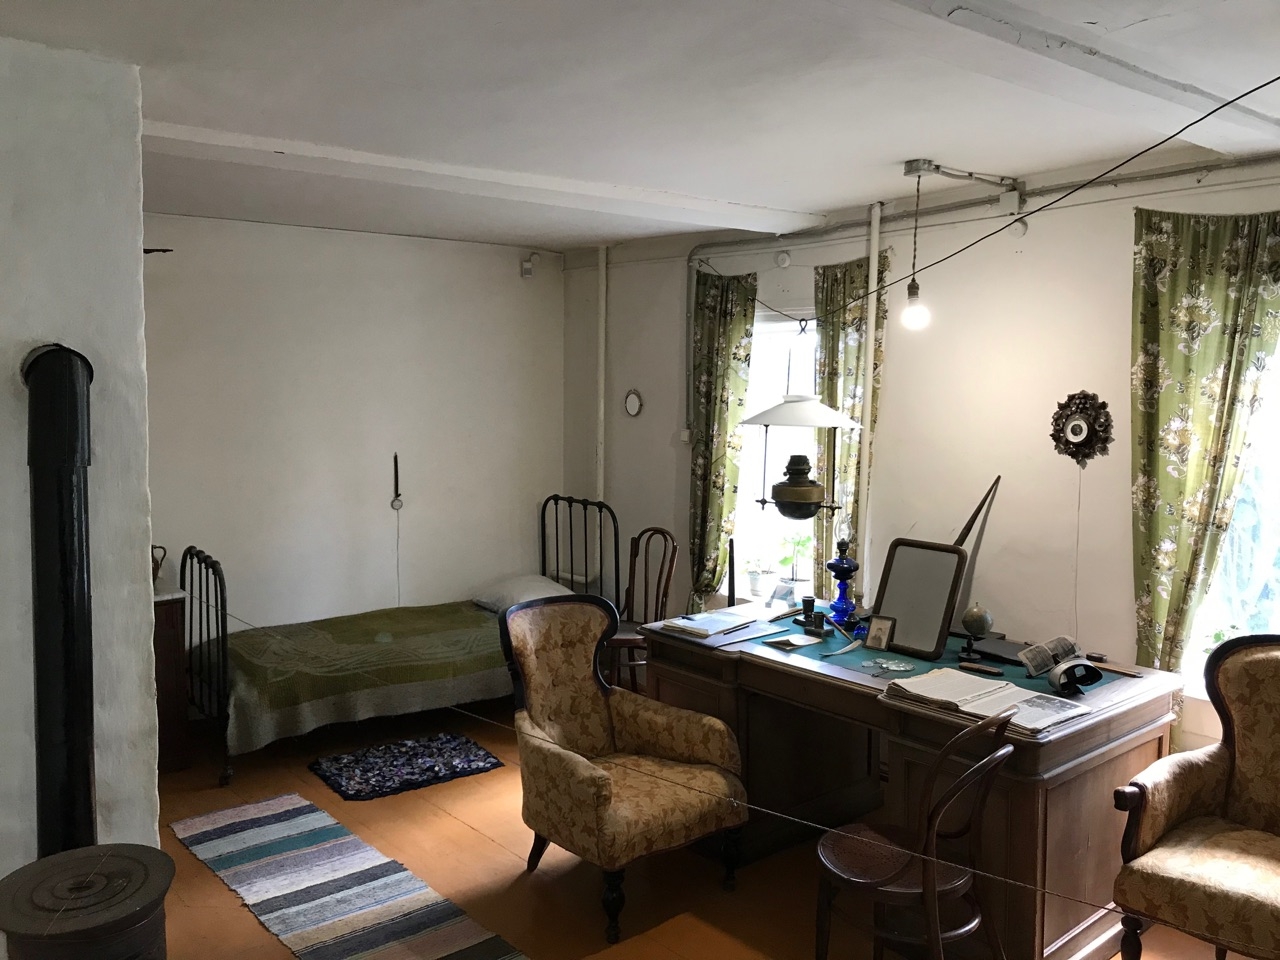 Кабинет Циолковского с лампой на тросу, которая может передвигаться по всей комнате для удобства самого учёного Калуга, Россия